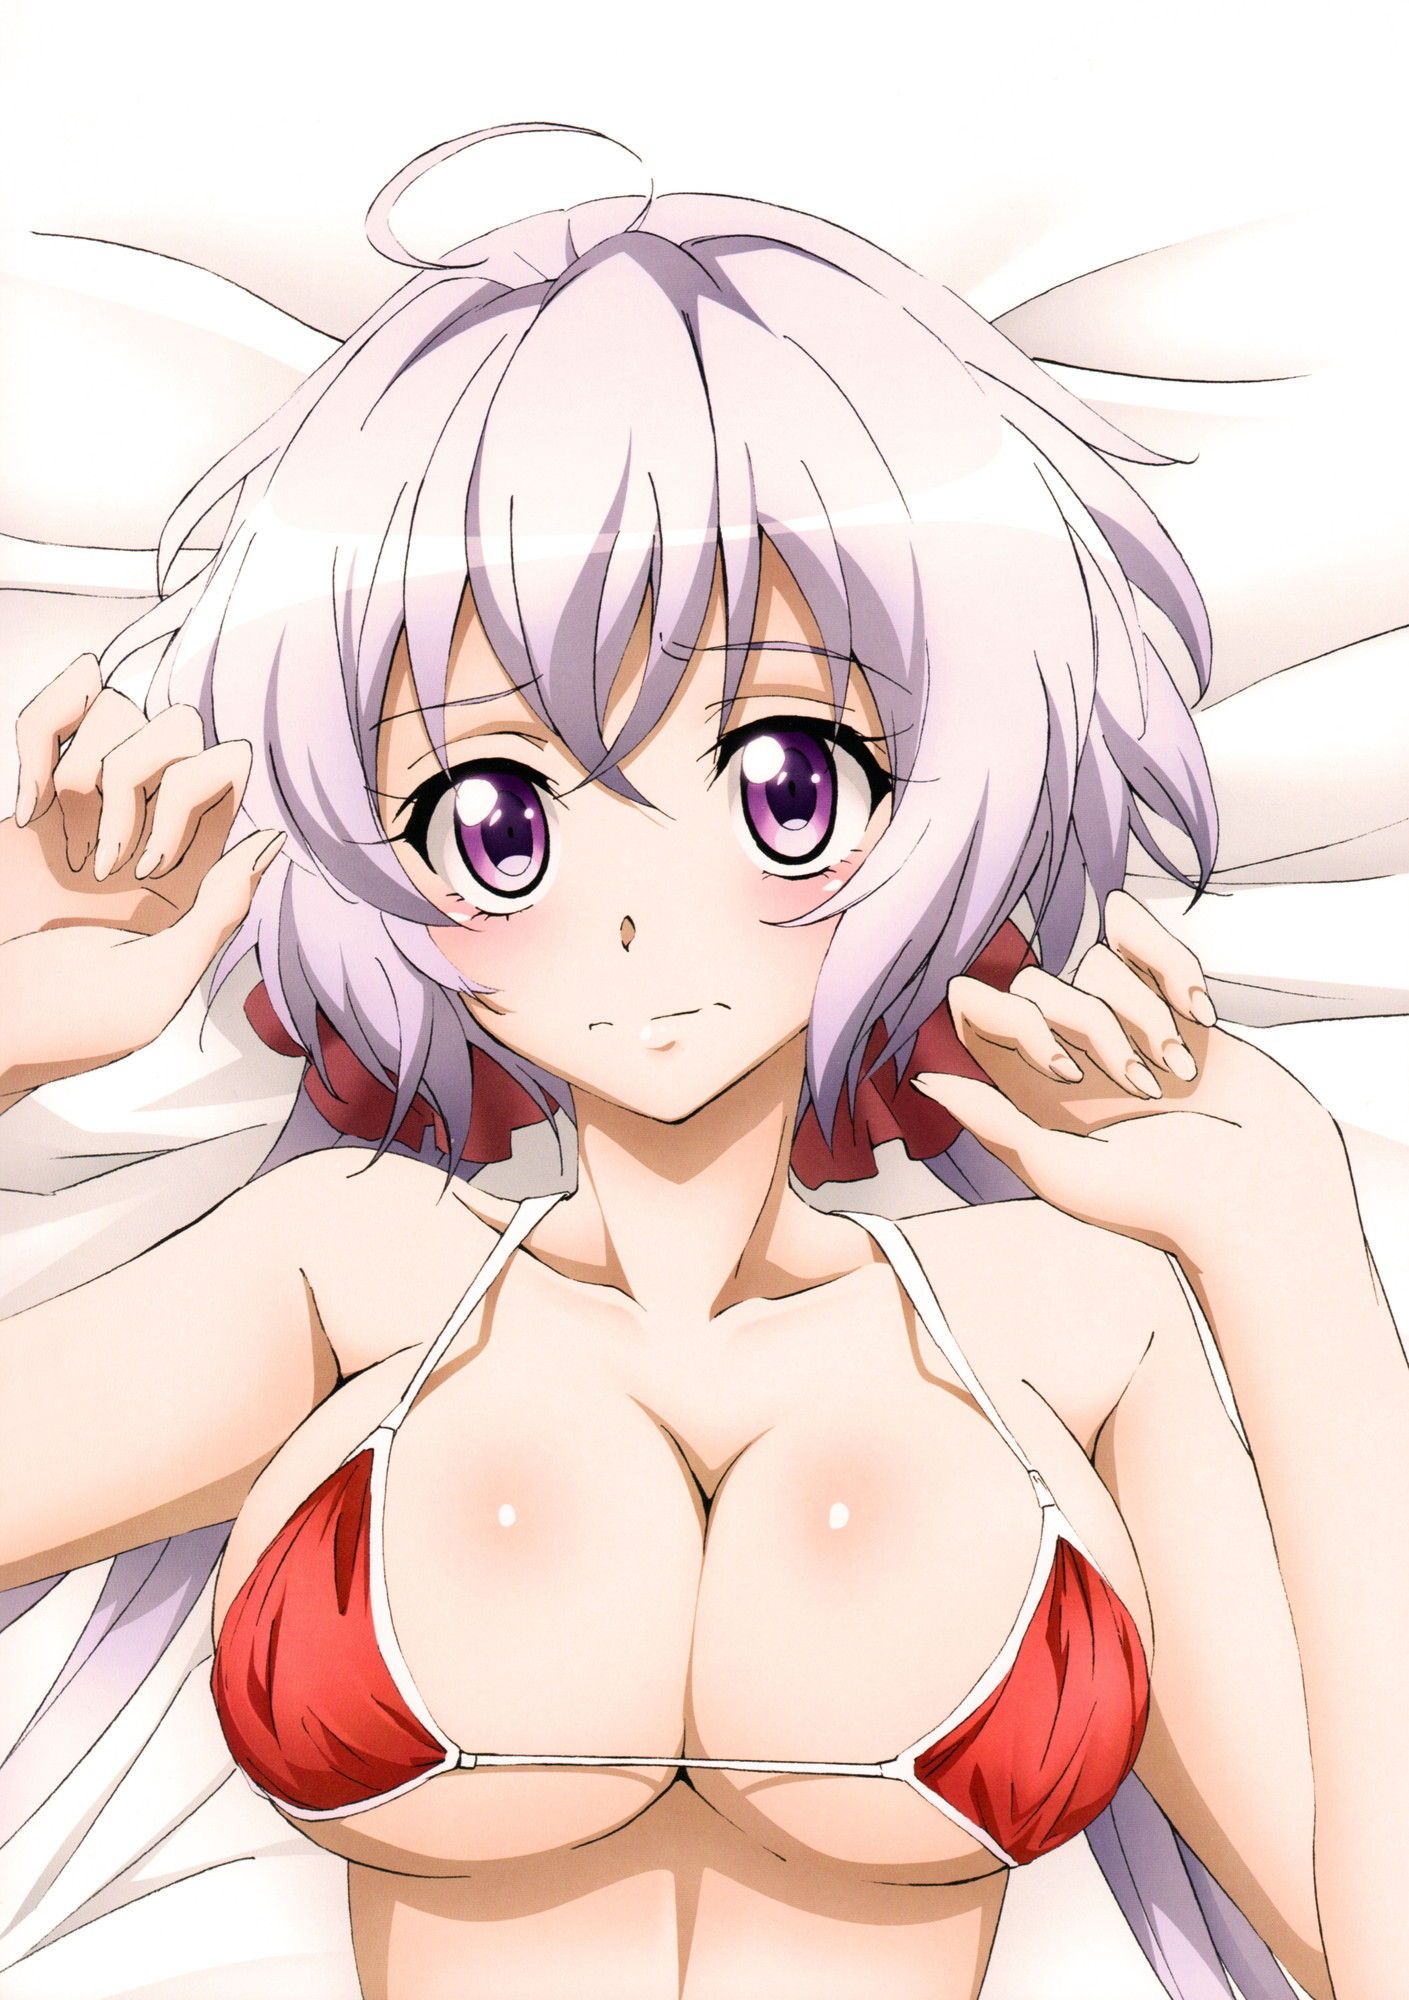 【Image】Symphogear is a erotic anime wwwwwww 12